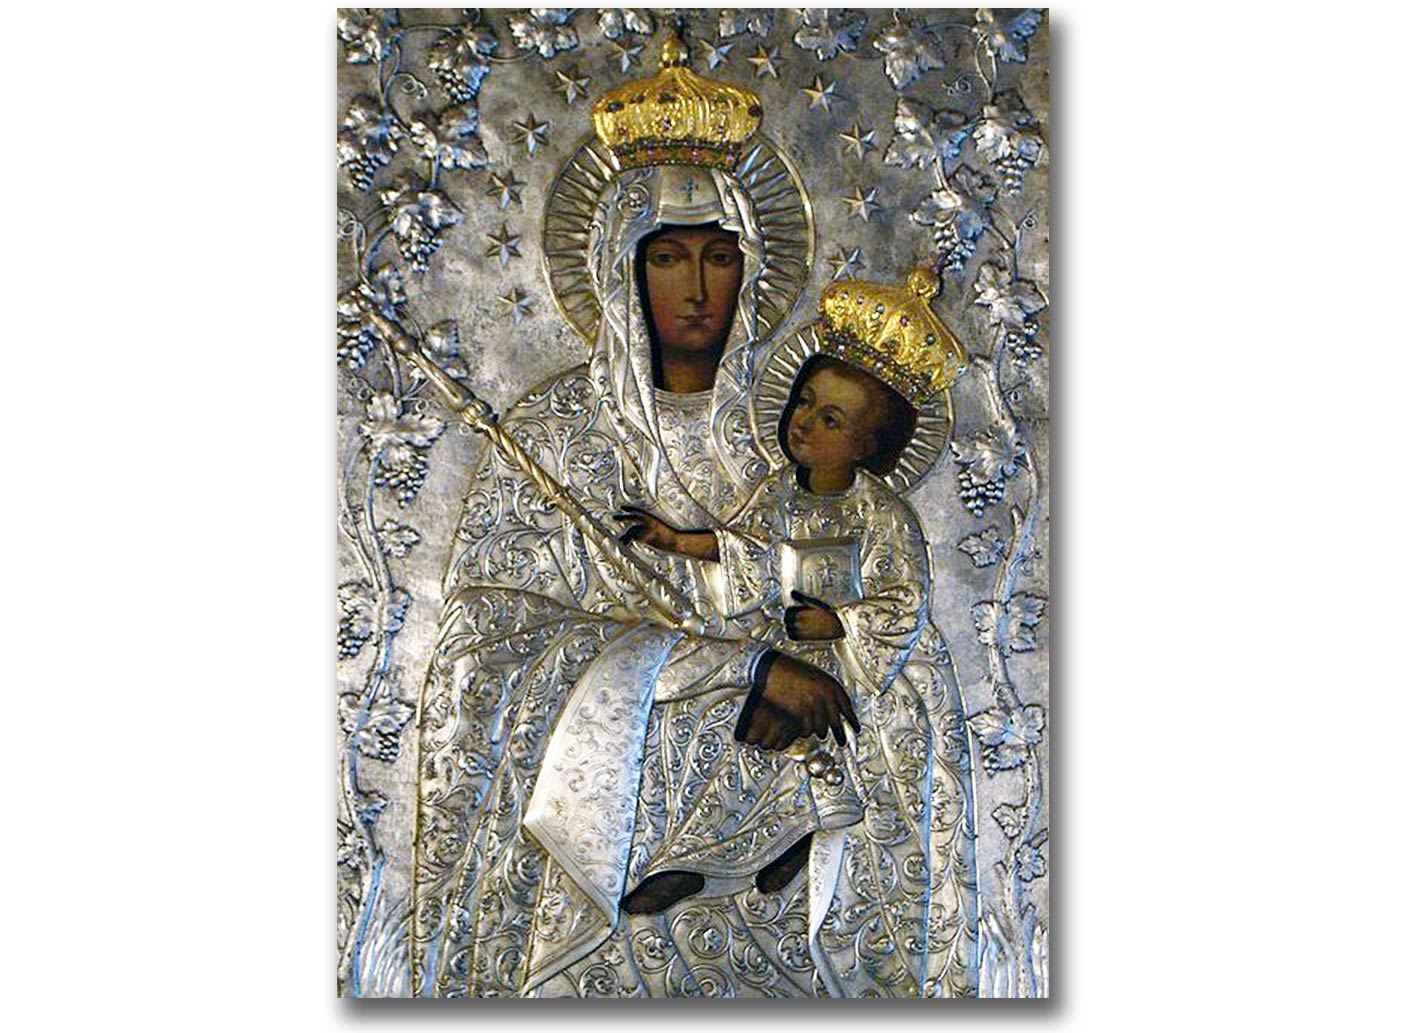 Cudowny obraz Matki Bożej Latyczowskiej, który obecnie znajduje się w Lublinie